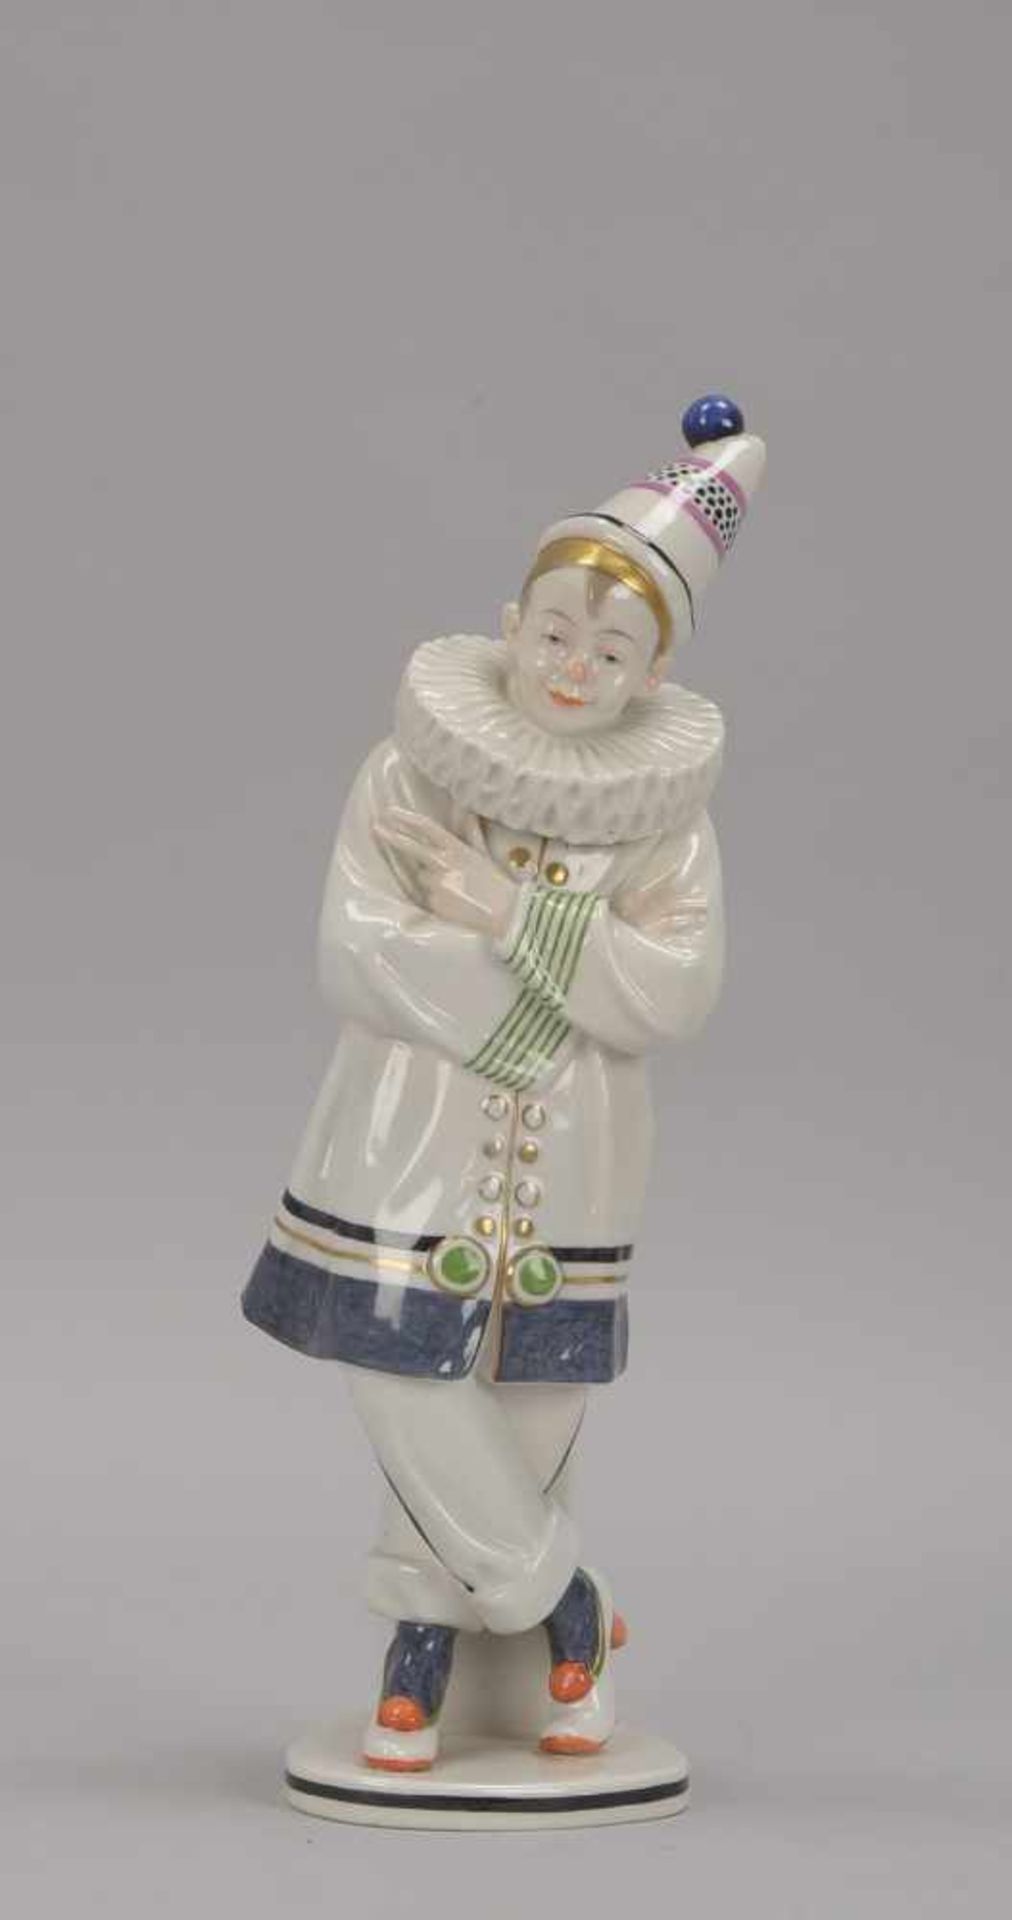 ENS Mühlenmarke, Porzellanfigur, 'Weißer Clown', farbig gefasst und mit Golddekor, Entwurf: A.